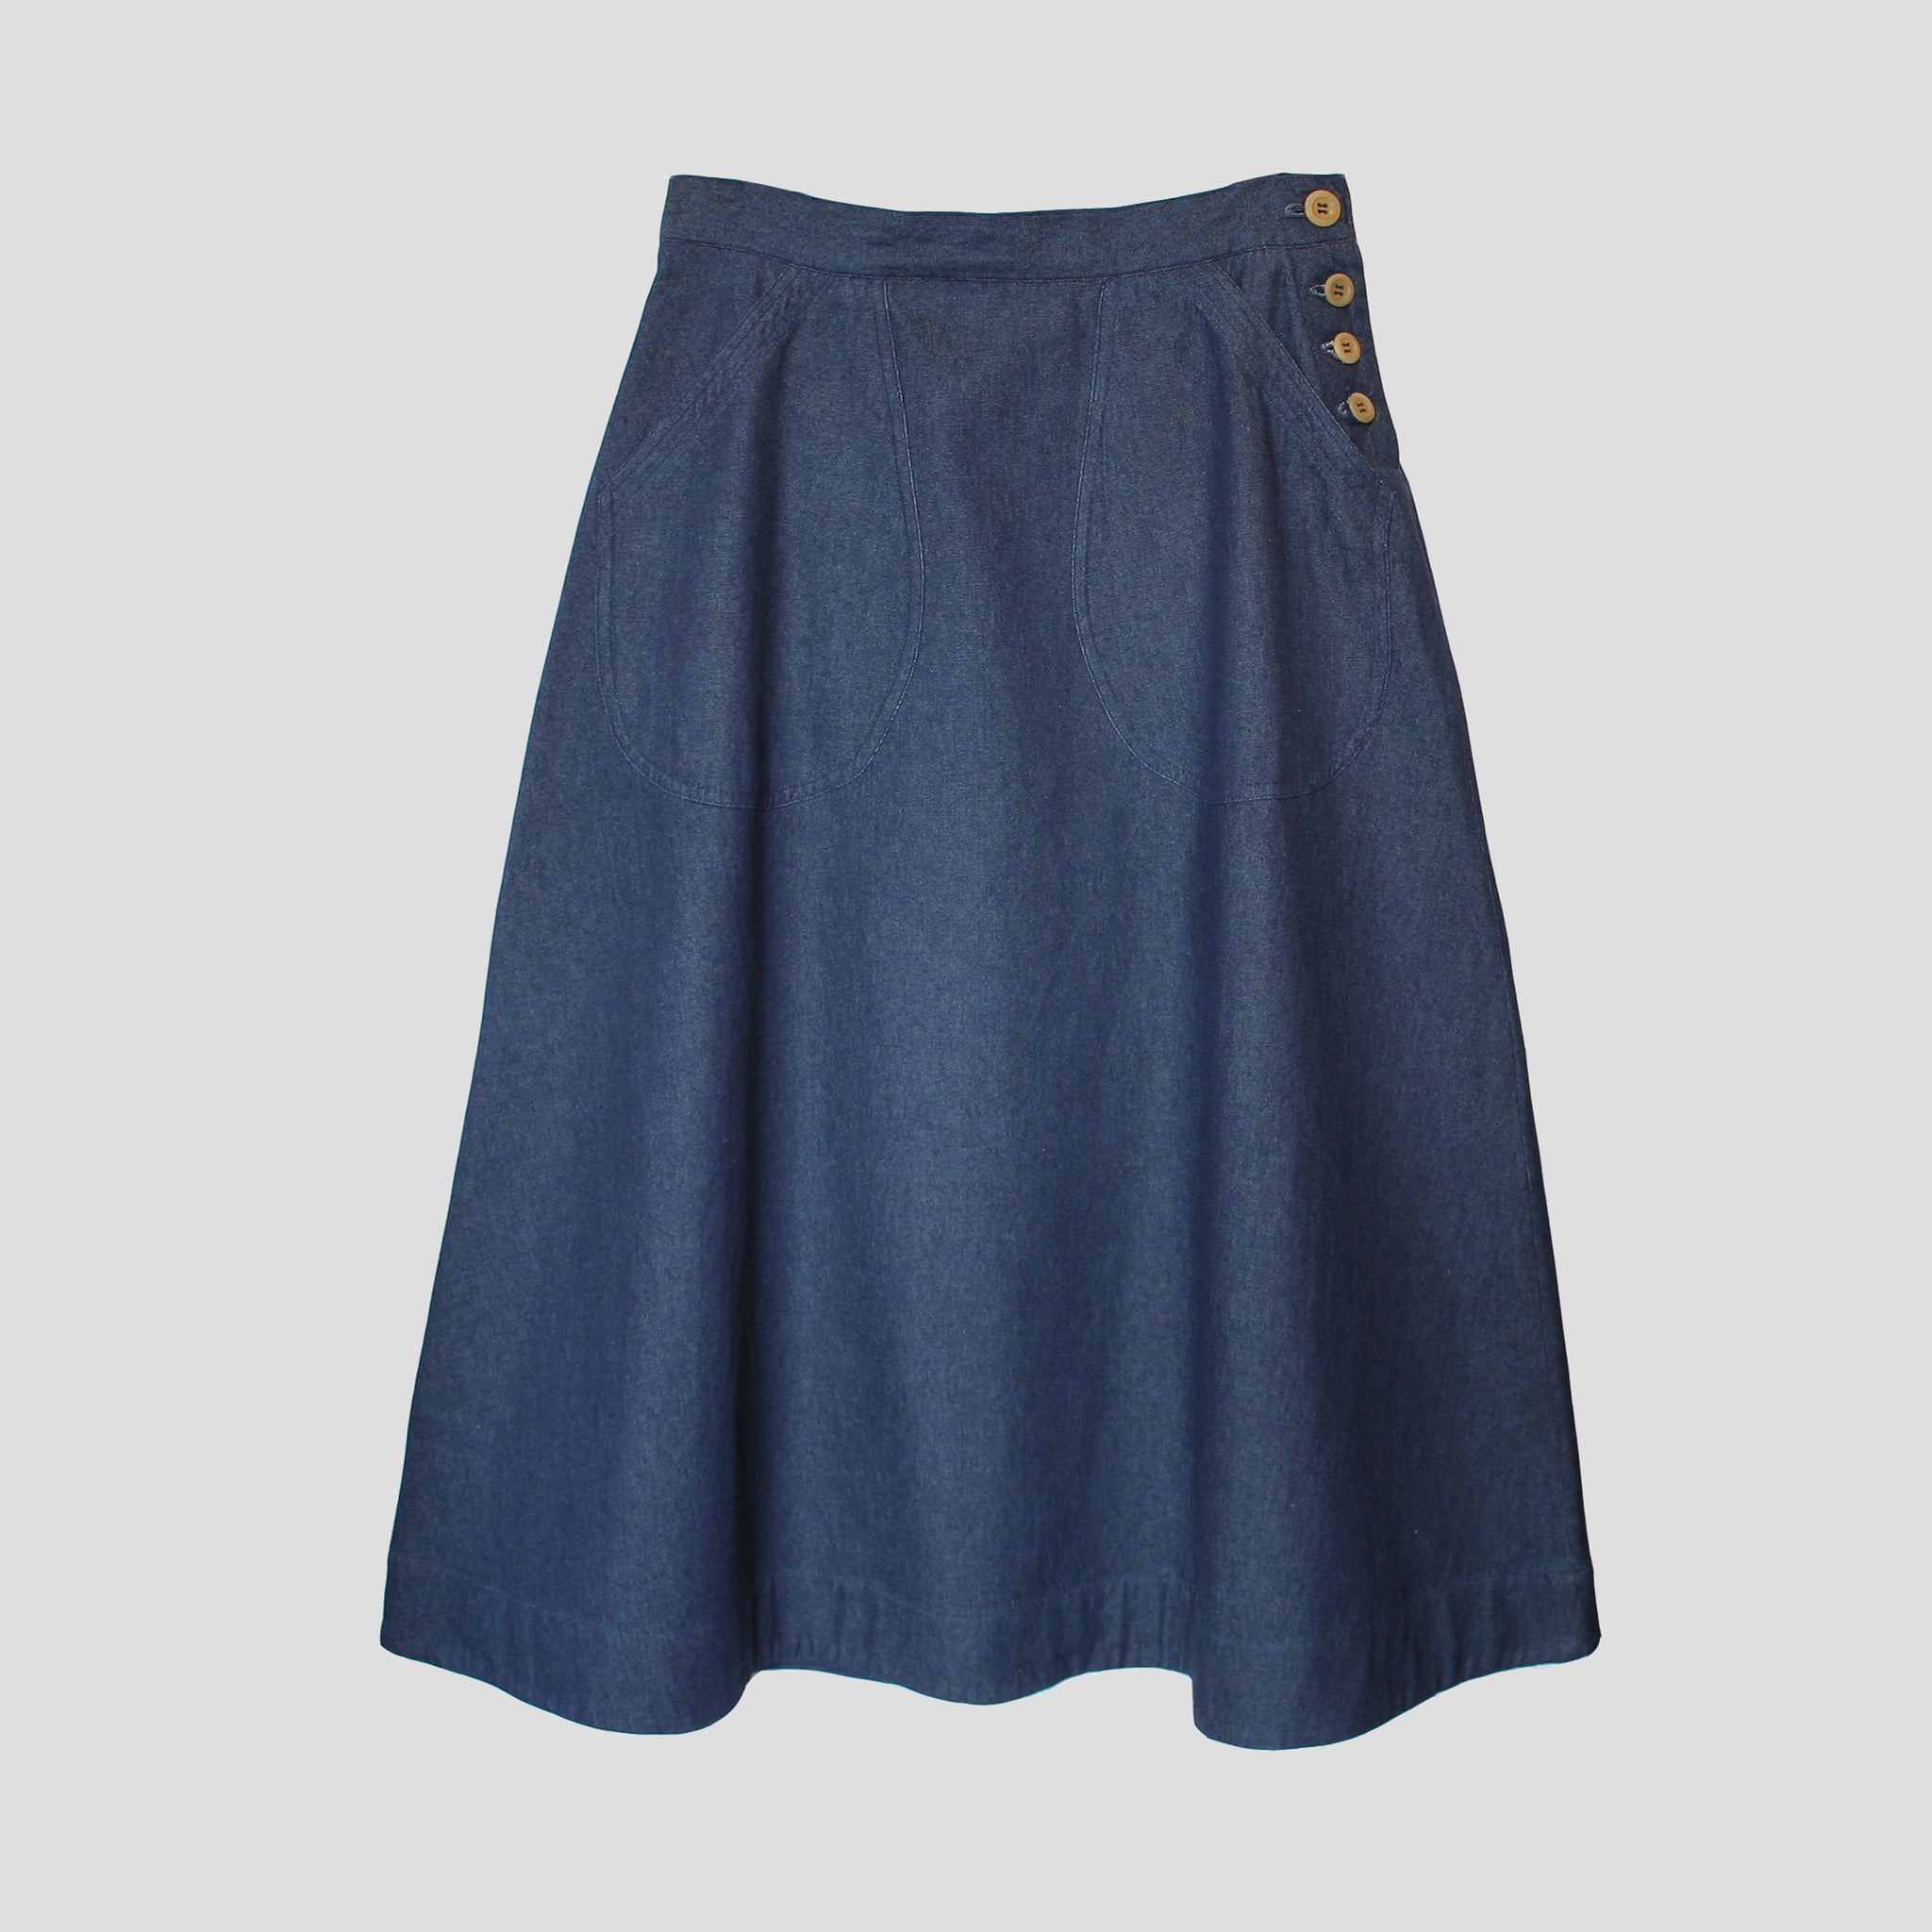 Highbury skirt